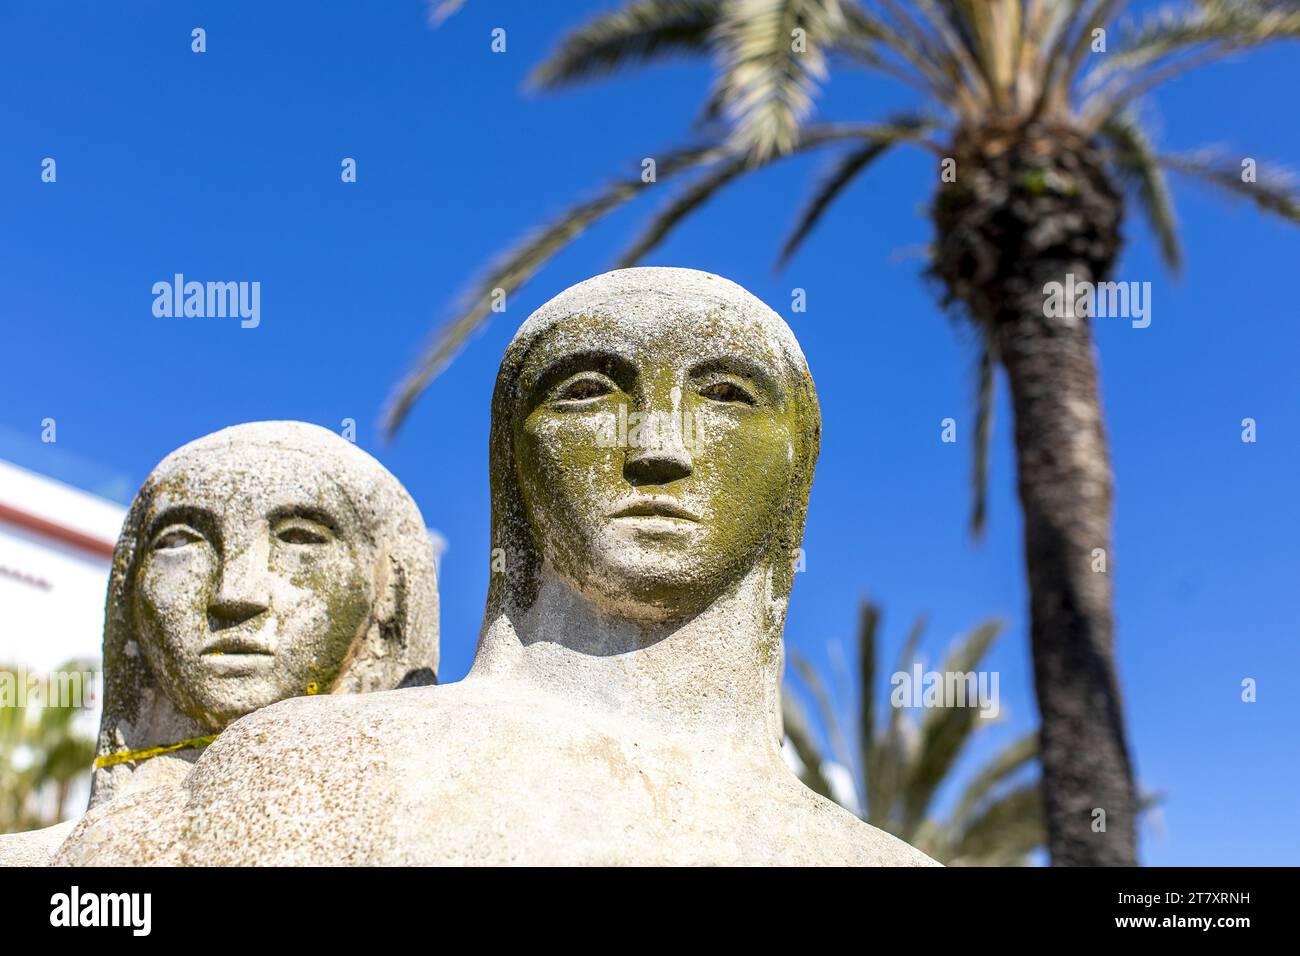 Détail, Statue des trois femmes, Sitges, Catalogne, Espagne, Europe Banque D'Images